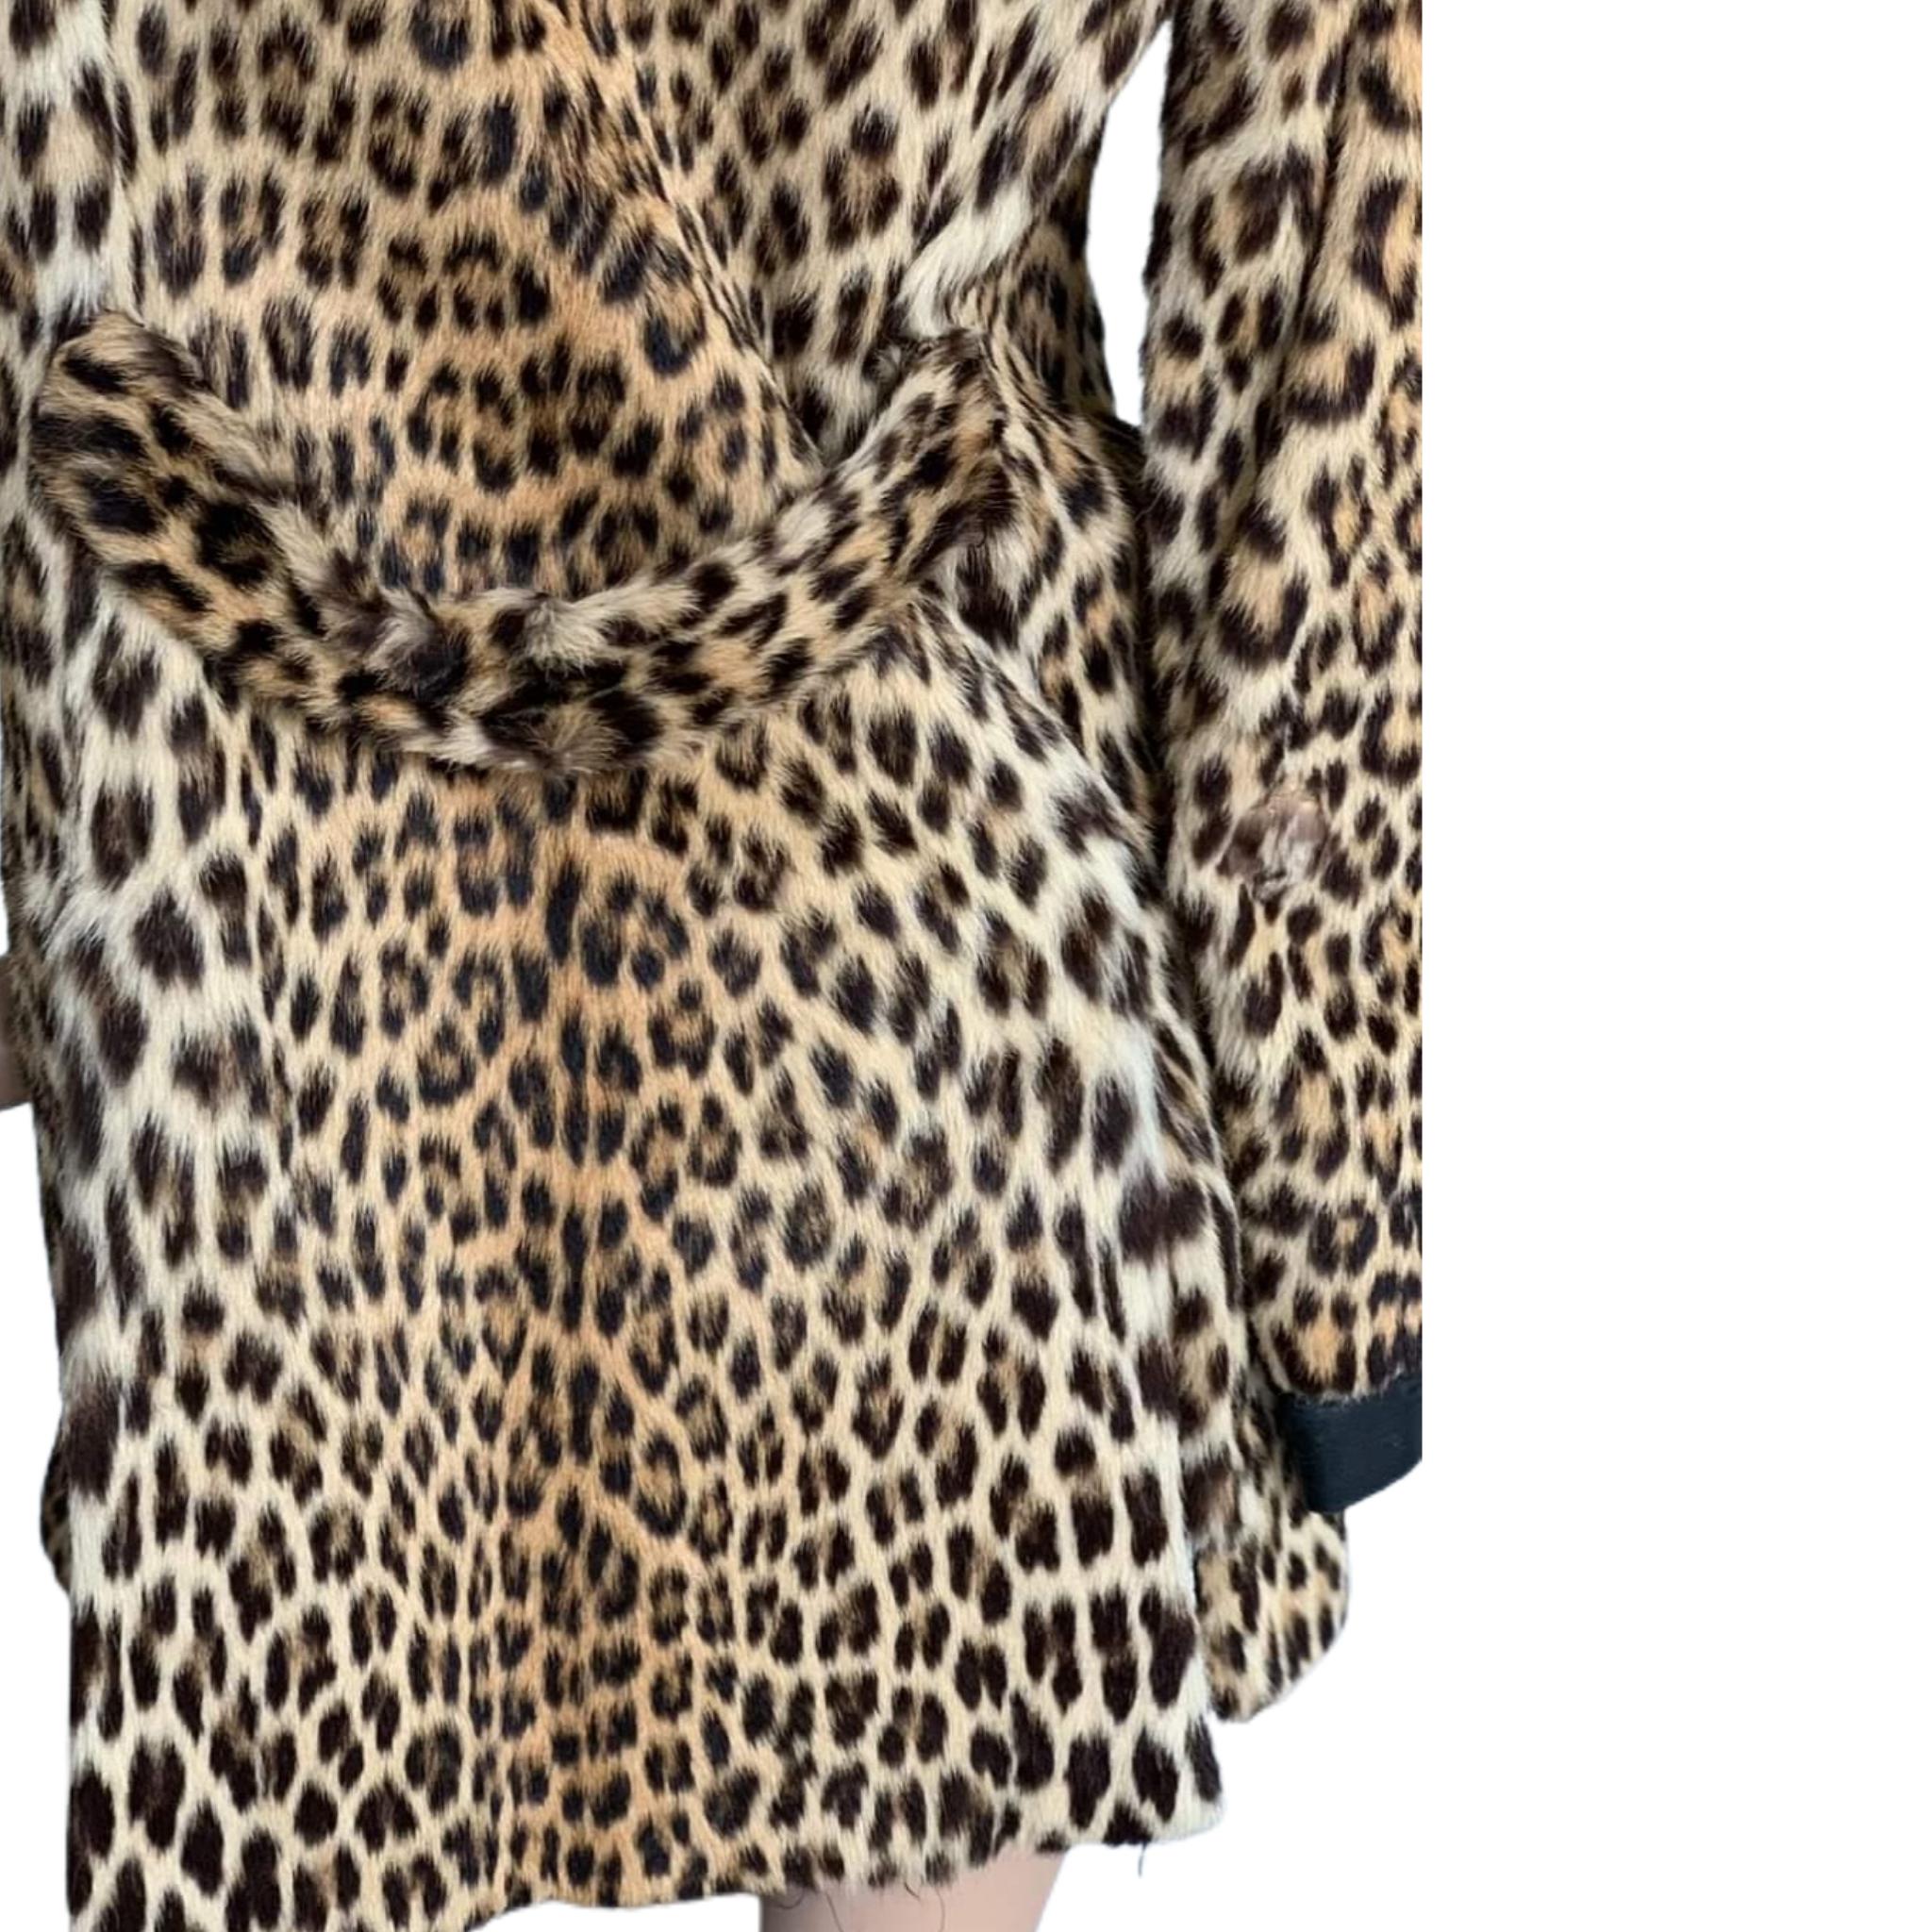 real leopard fur coat vintage